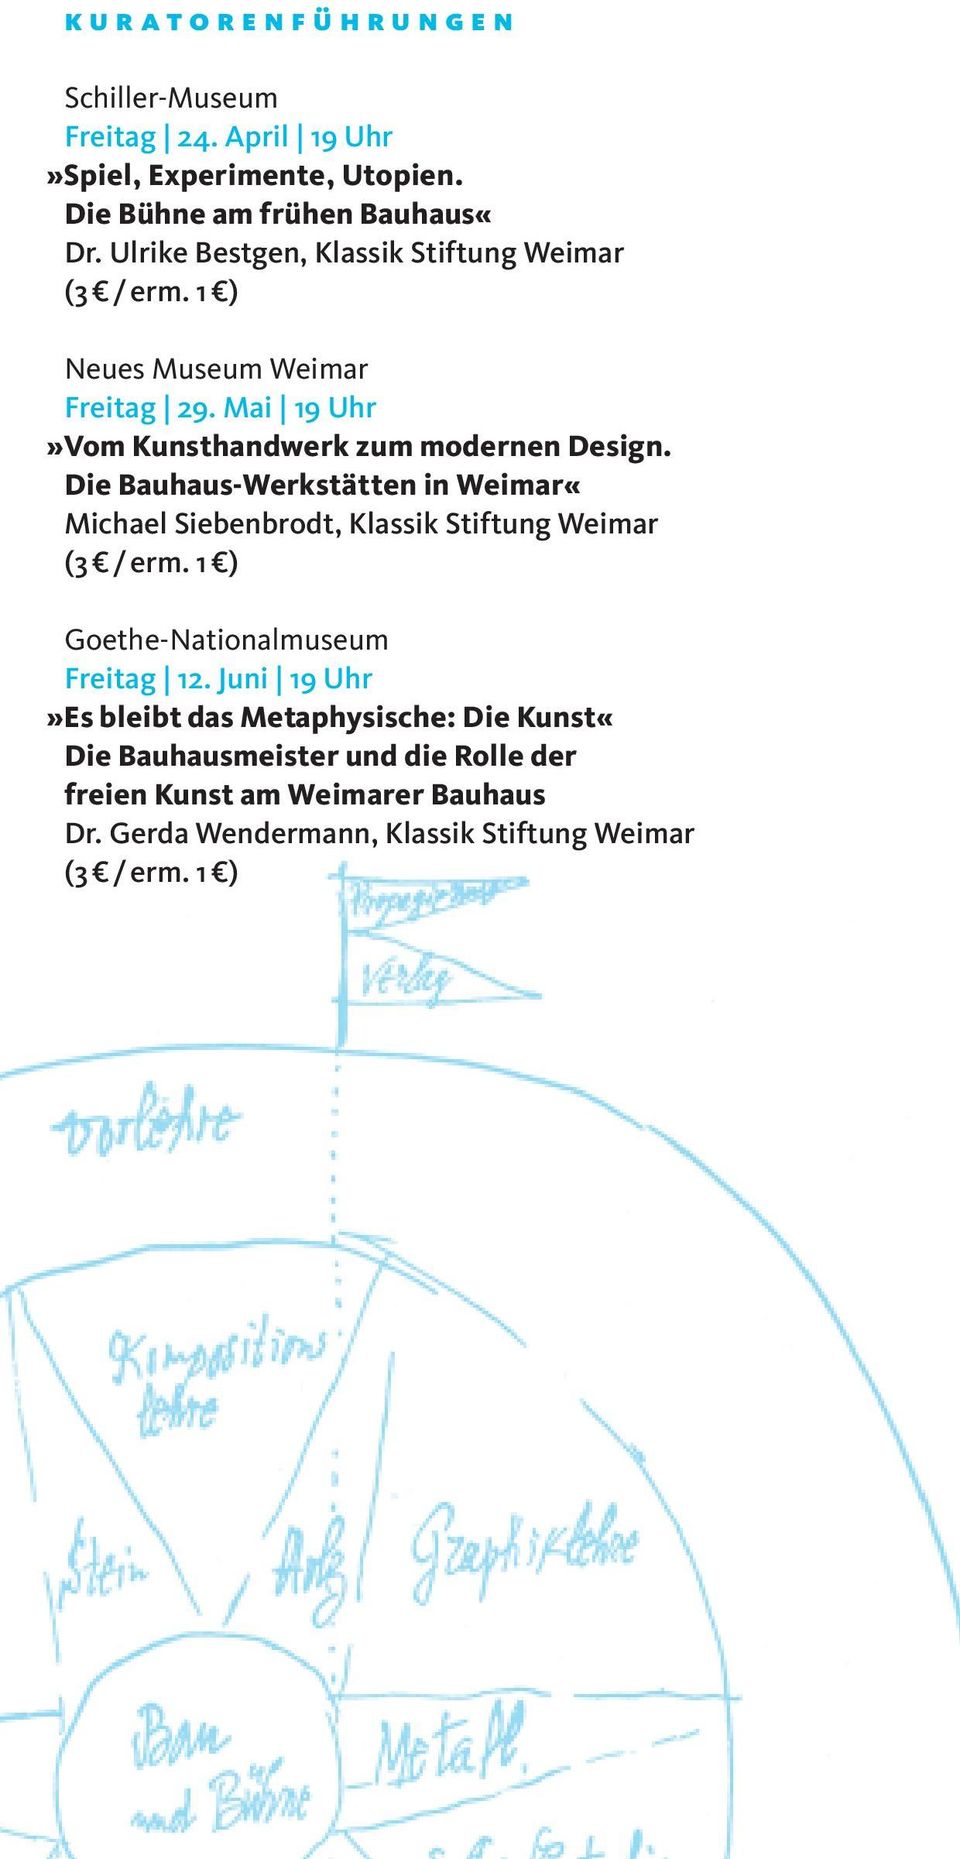 Die Bauhaus-Werkstätten in Weimar«Michael Siebenbrodt, Klassik Stiftung Weimar Goethe-Nationalmuseum Freitag 12.